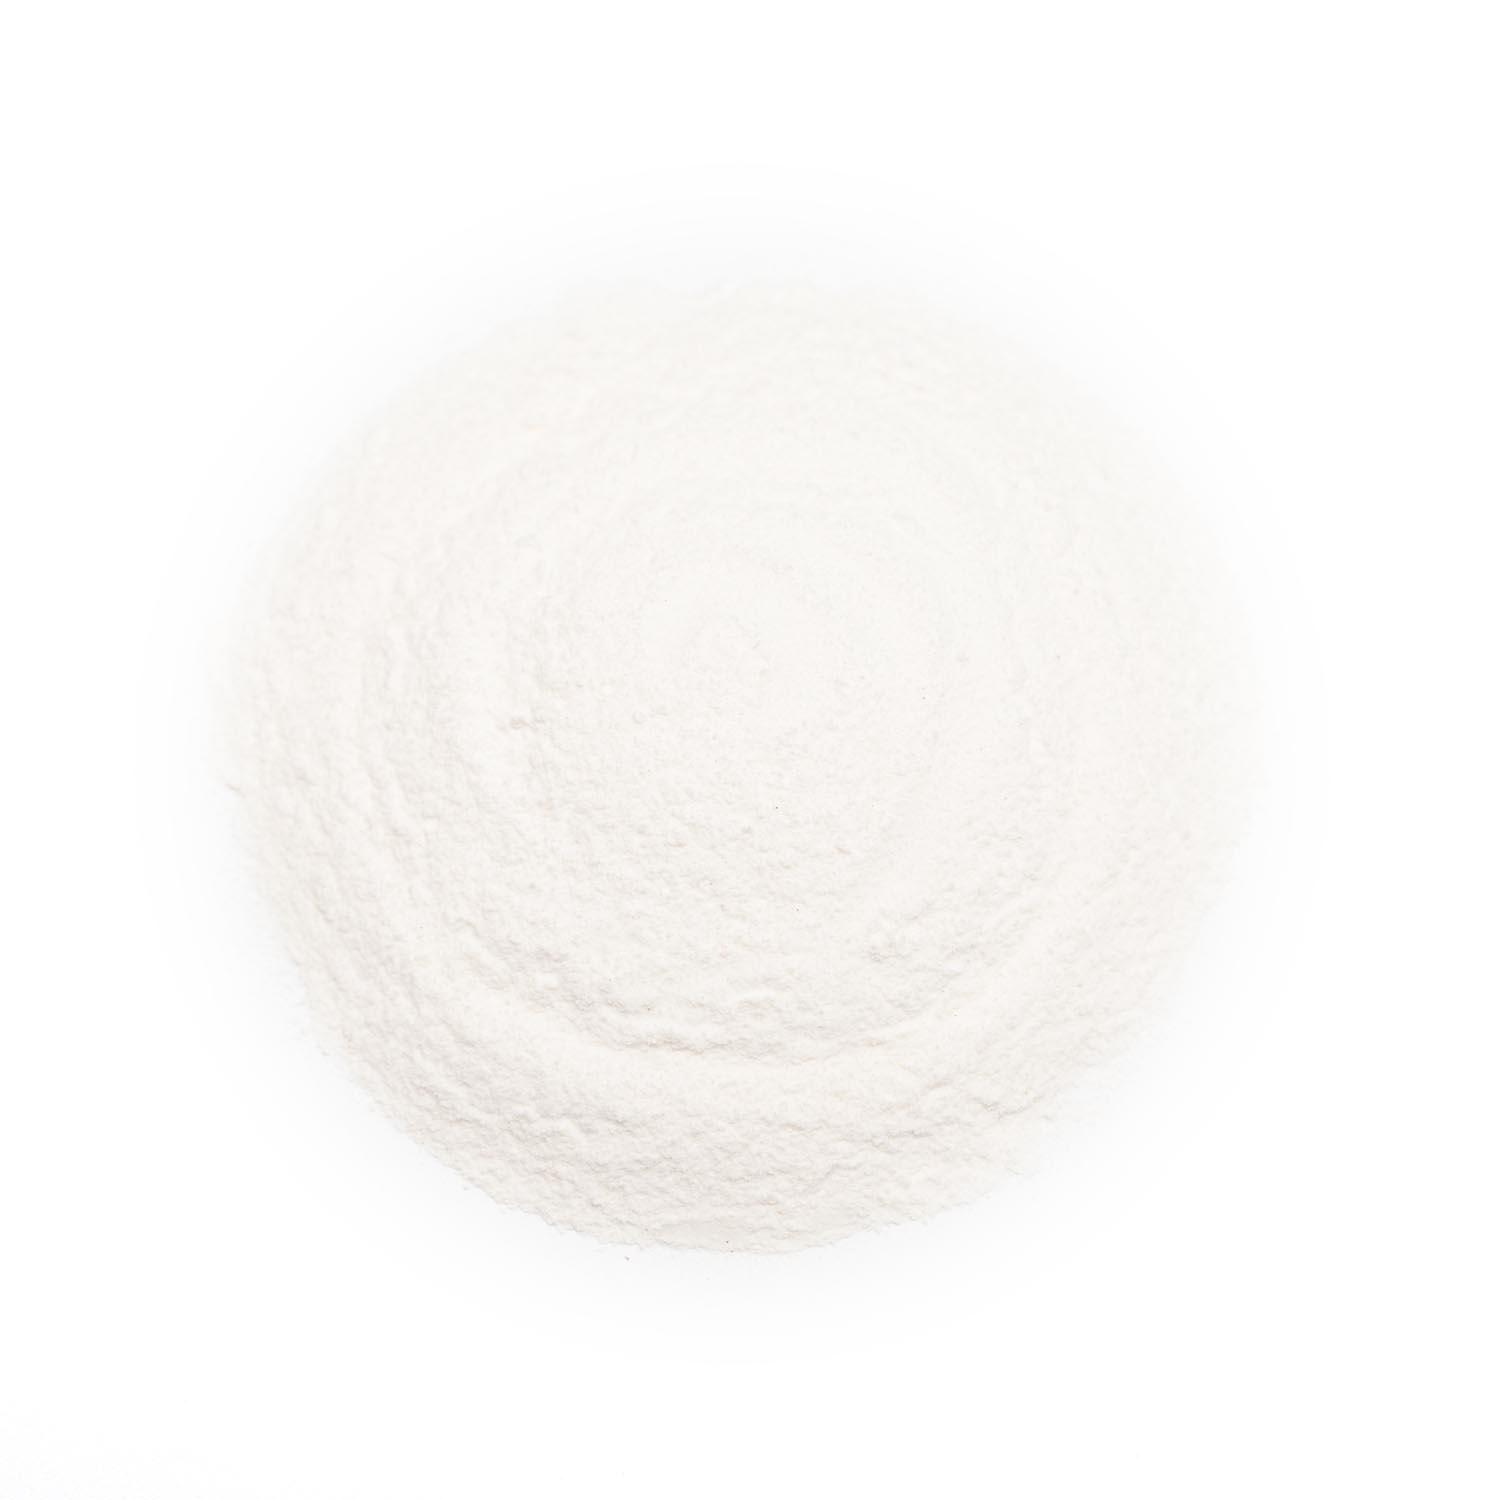 Organic Baking Powder 1500px